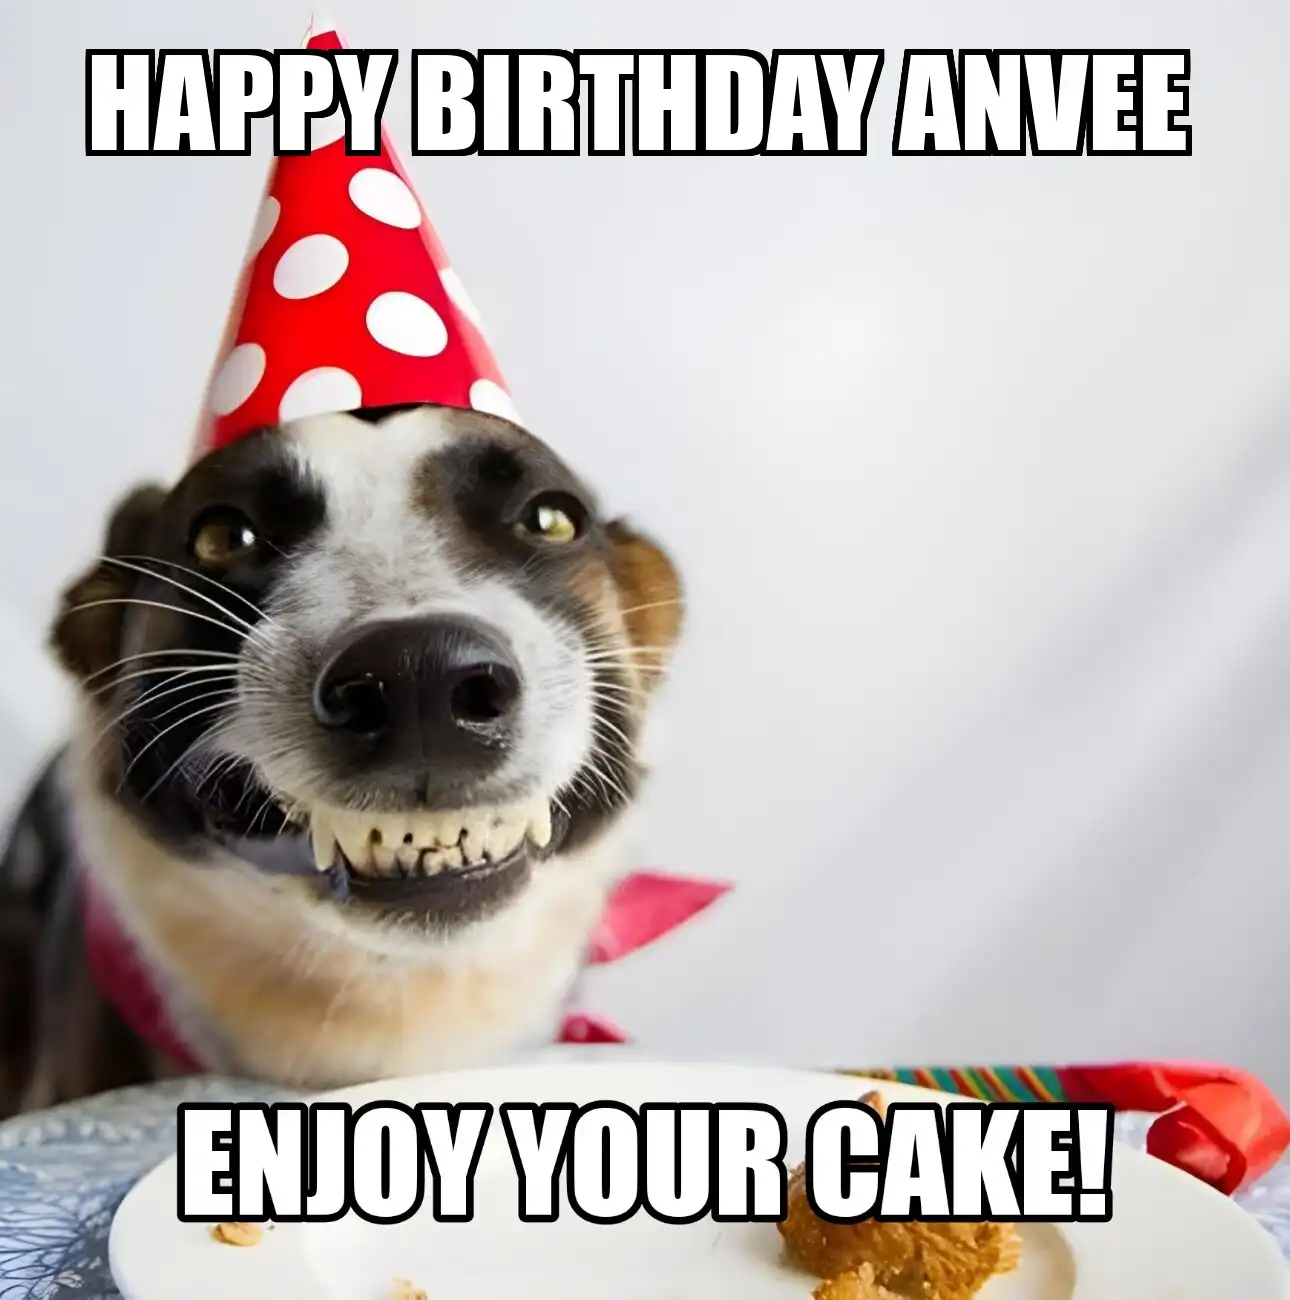 Happy Birthday Anvee Enjoy Your Cake Dog Meme